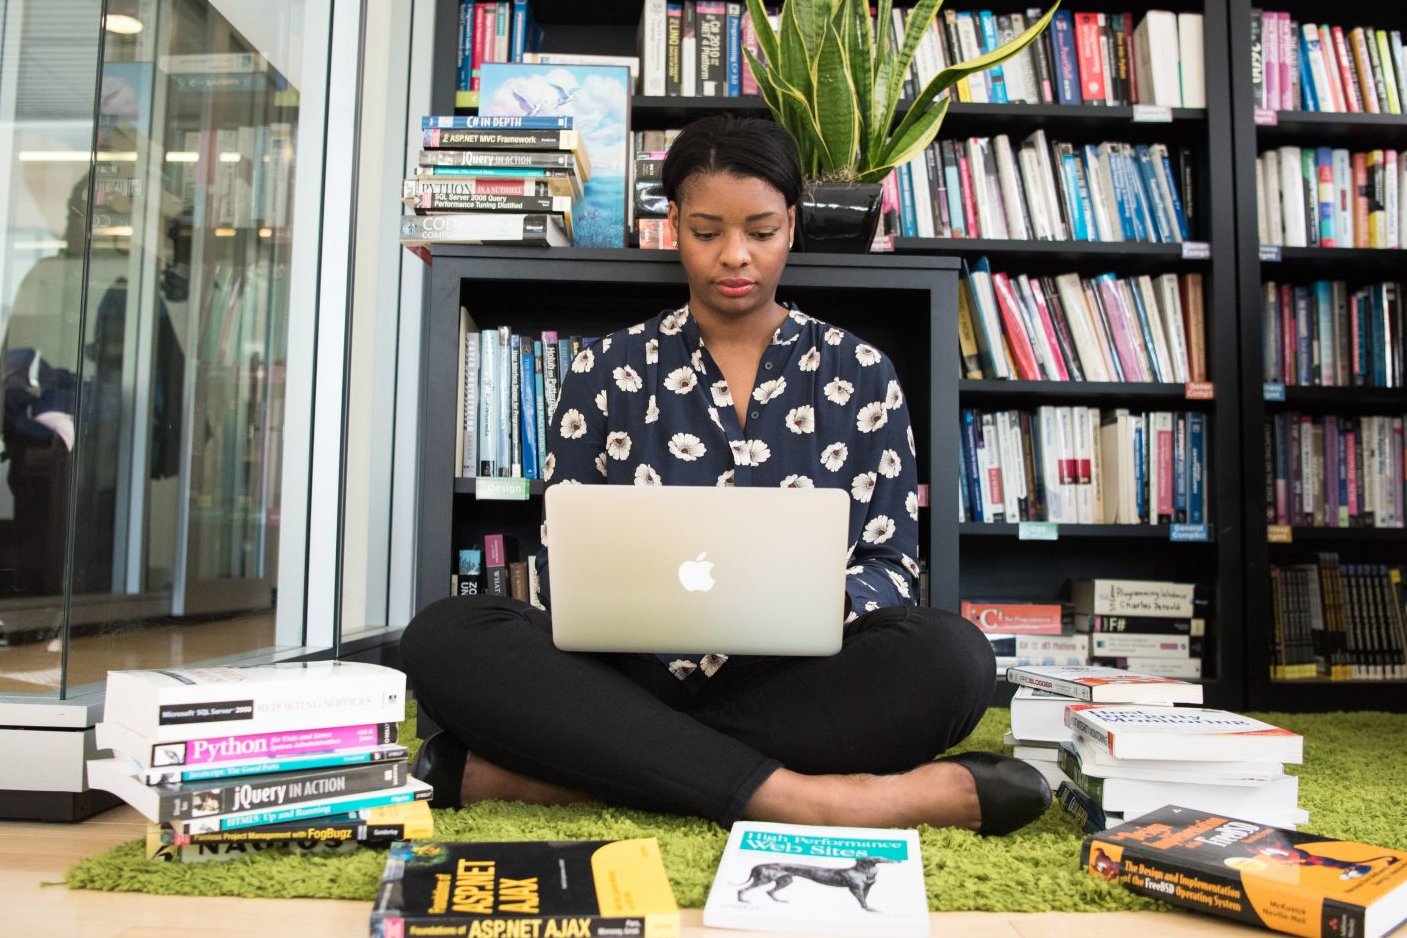 Junge Frau sitzt mit Laptop vor Bücherregal – vor ihr auf dem Boden liegen Bücher